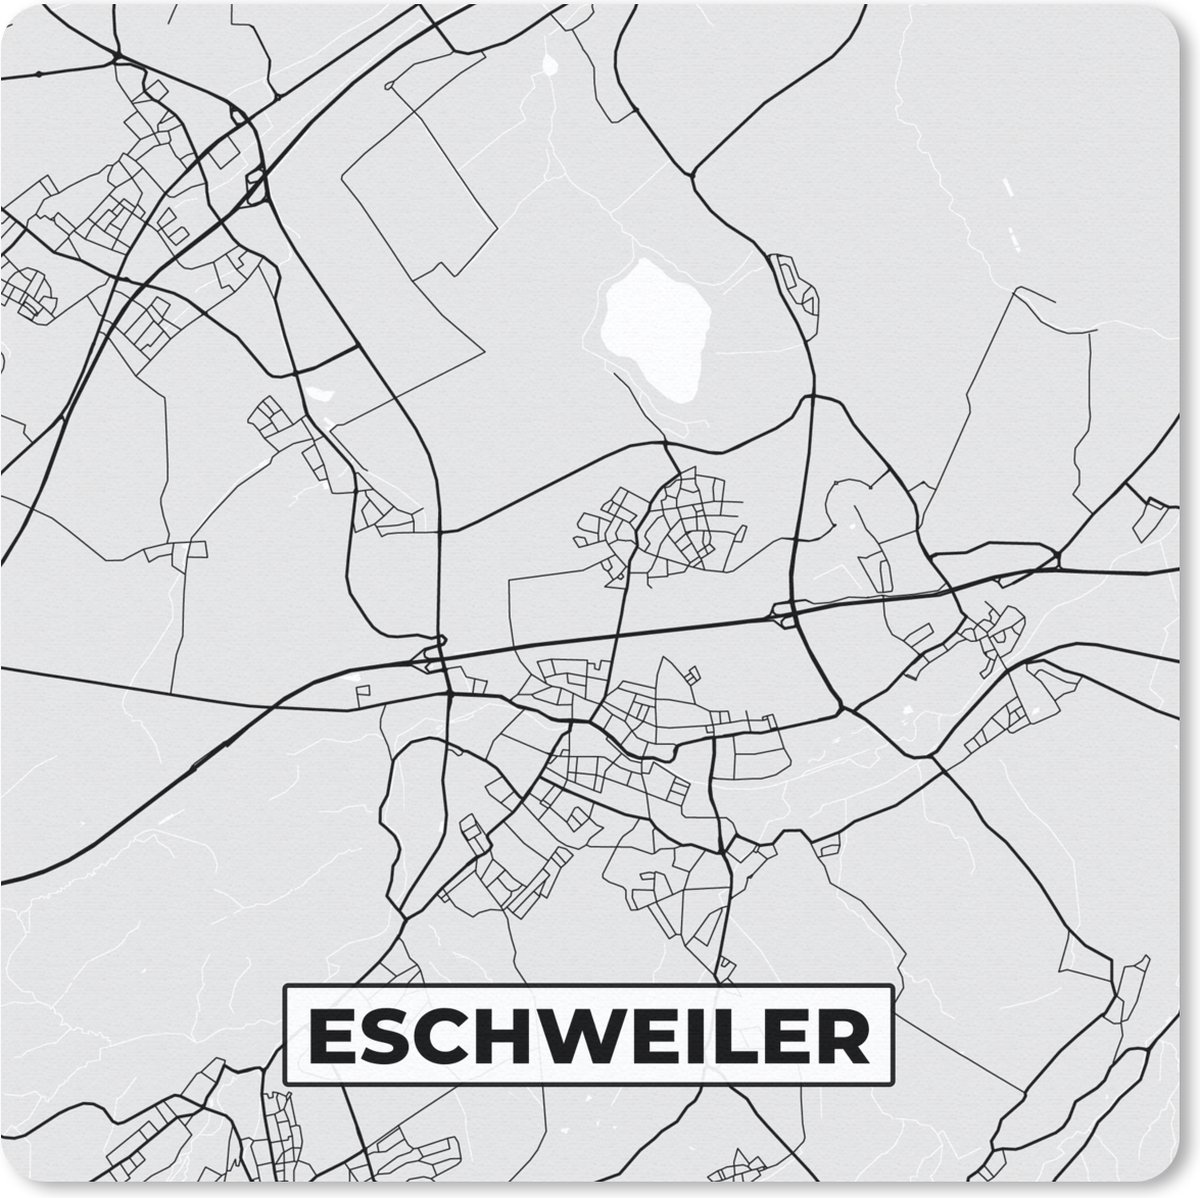 Muismat Klein - Kaart - Eschweiler - Duitsland - Plattegrond - Stadskaart - 20x20 cm